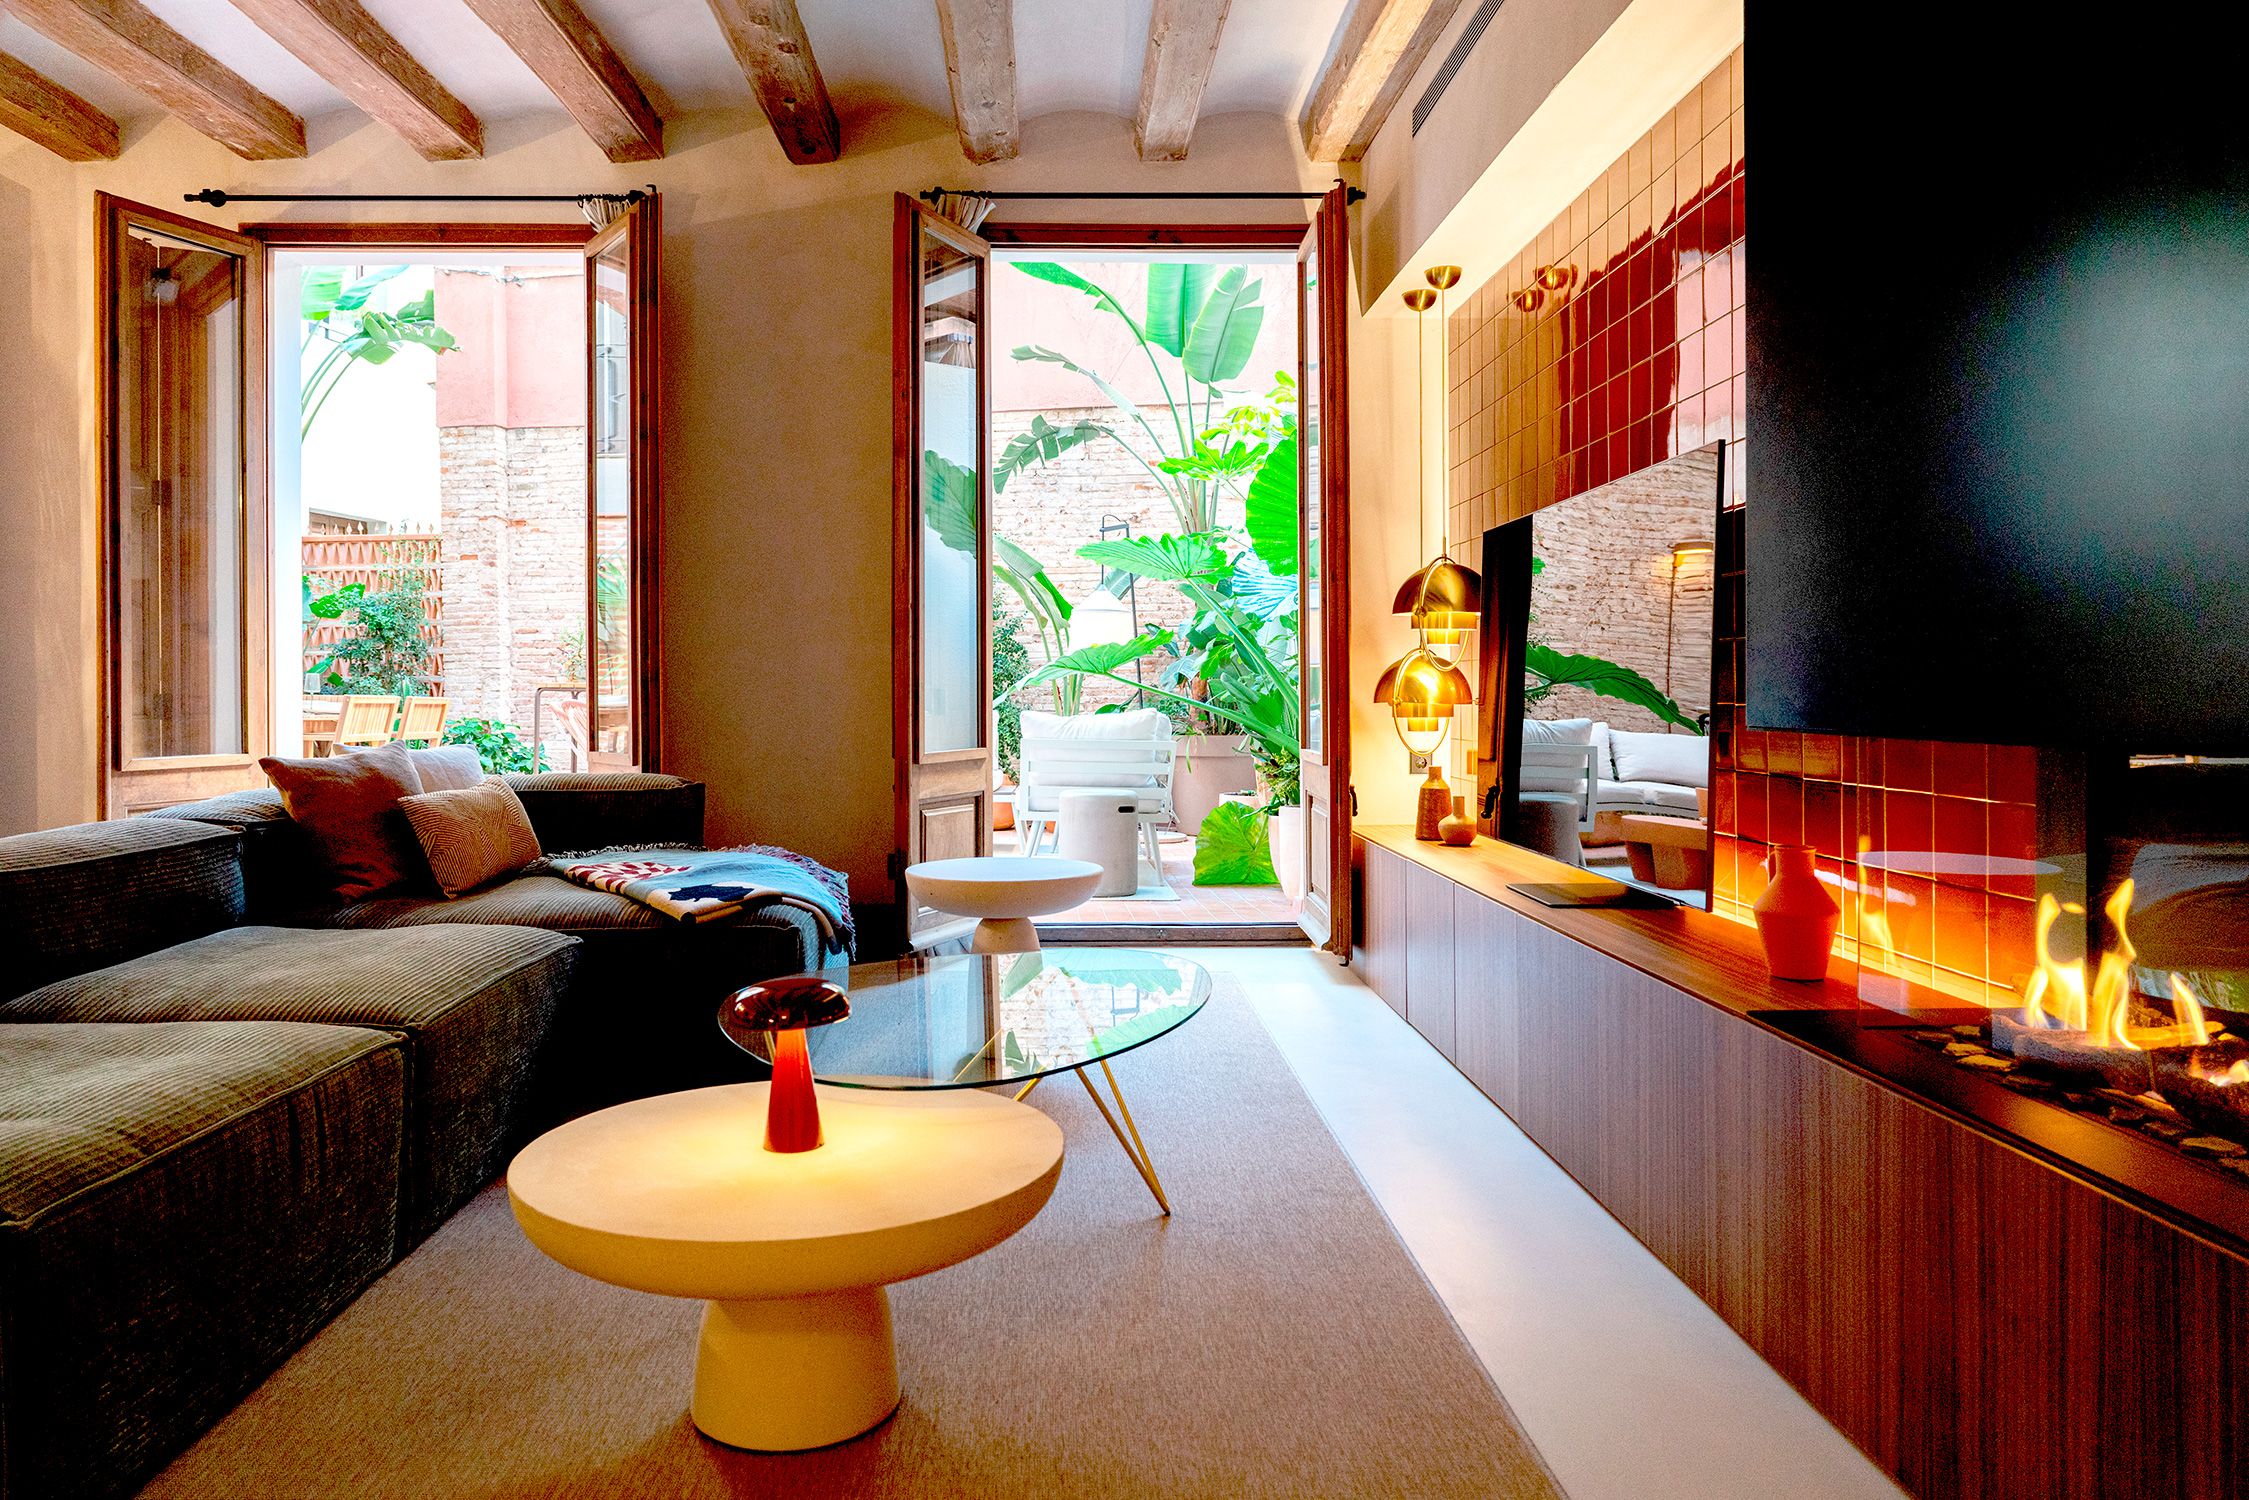 Decora una sala de estar con estilo vintage - Miroytengo